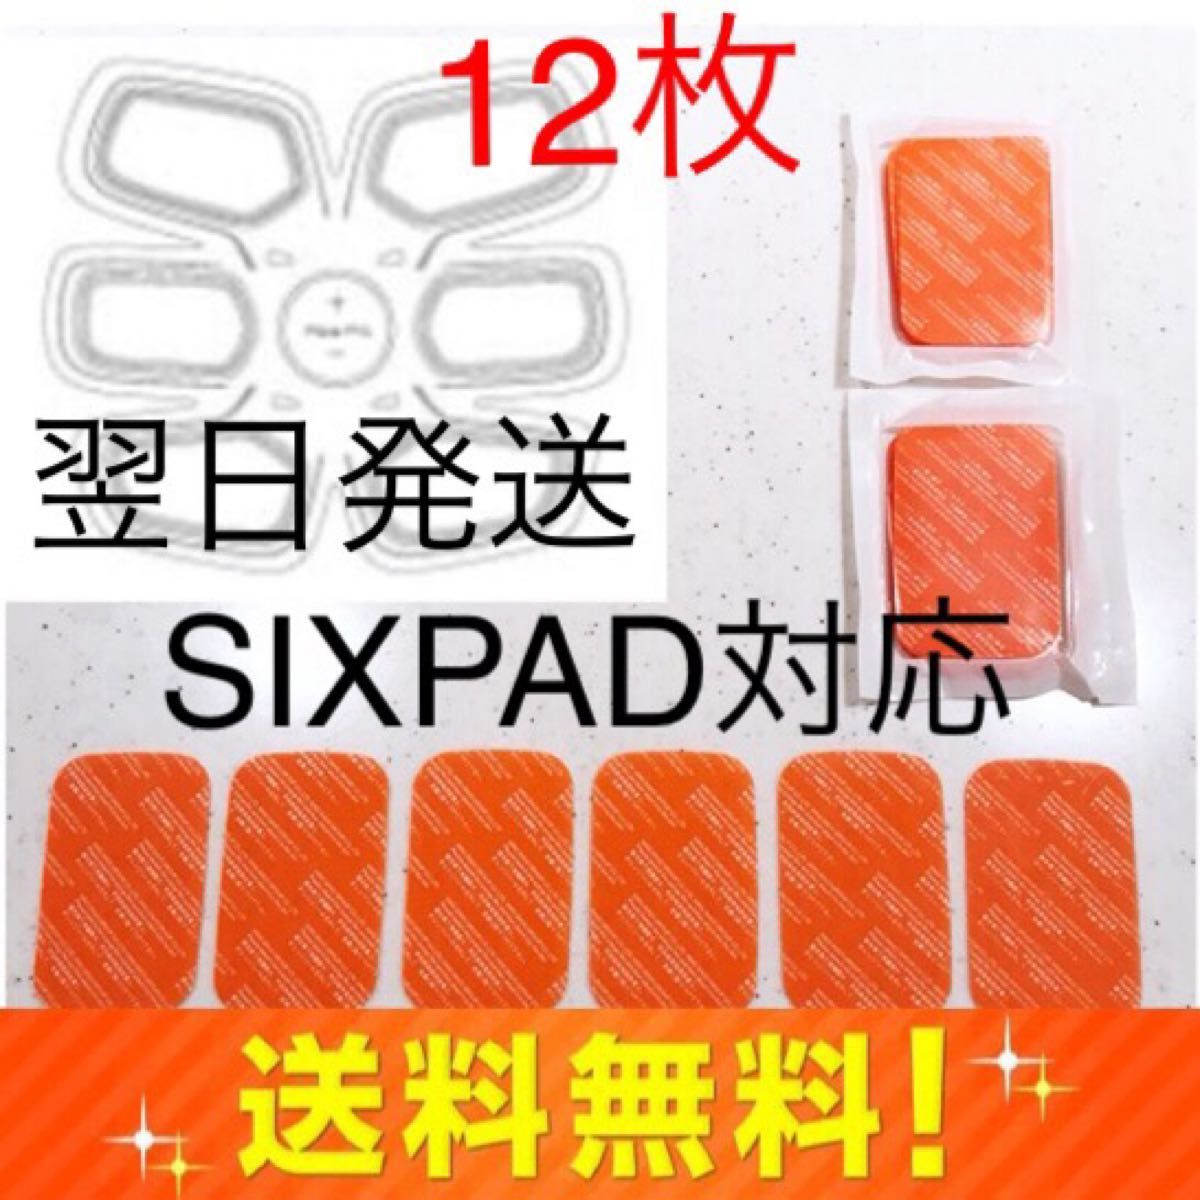 12枚 SIXPAD 互換ジェルシート シックスパッド アブズフィット2 g